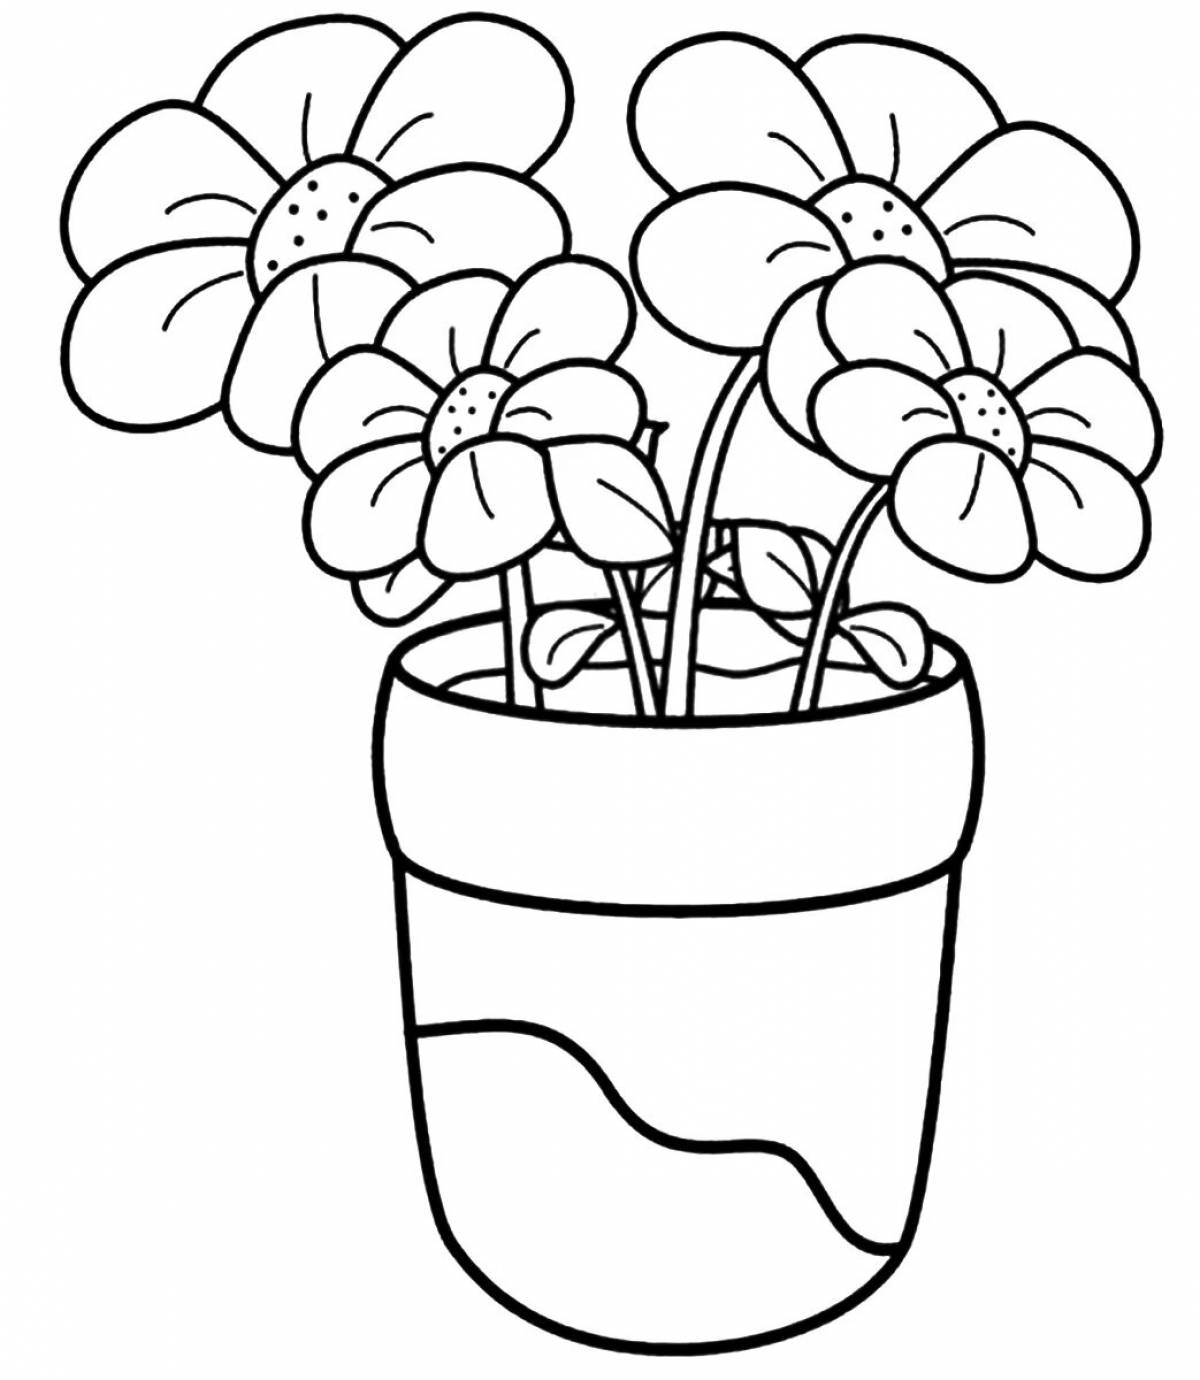 Adorable geranium in a baby pot